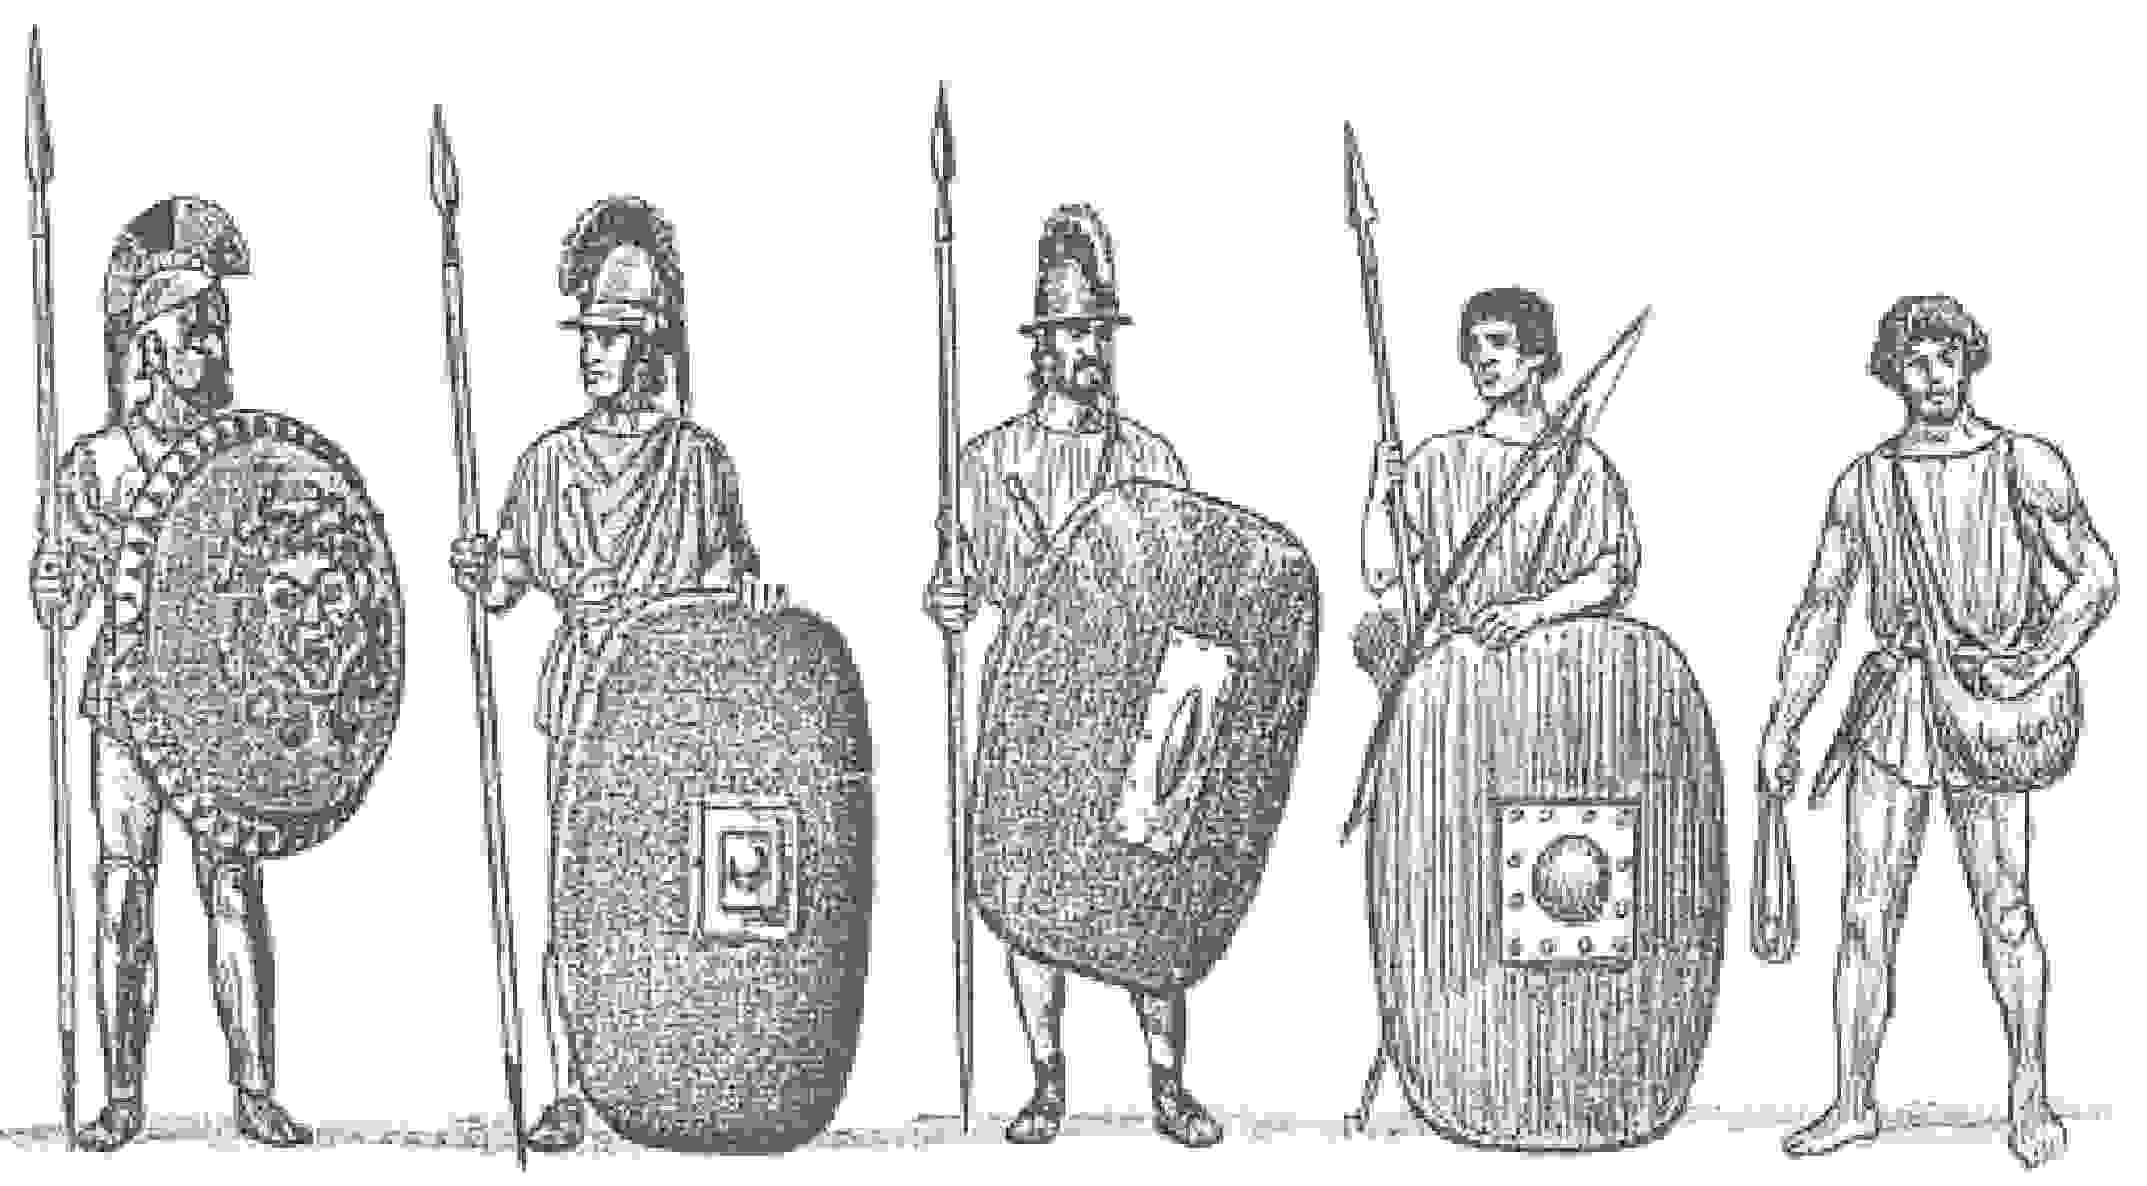 Римская армия рисунок легкий